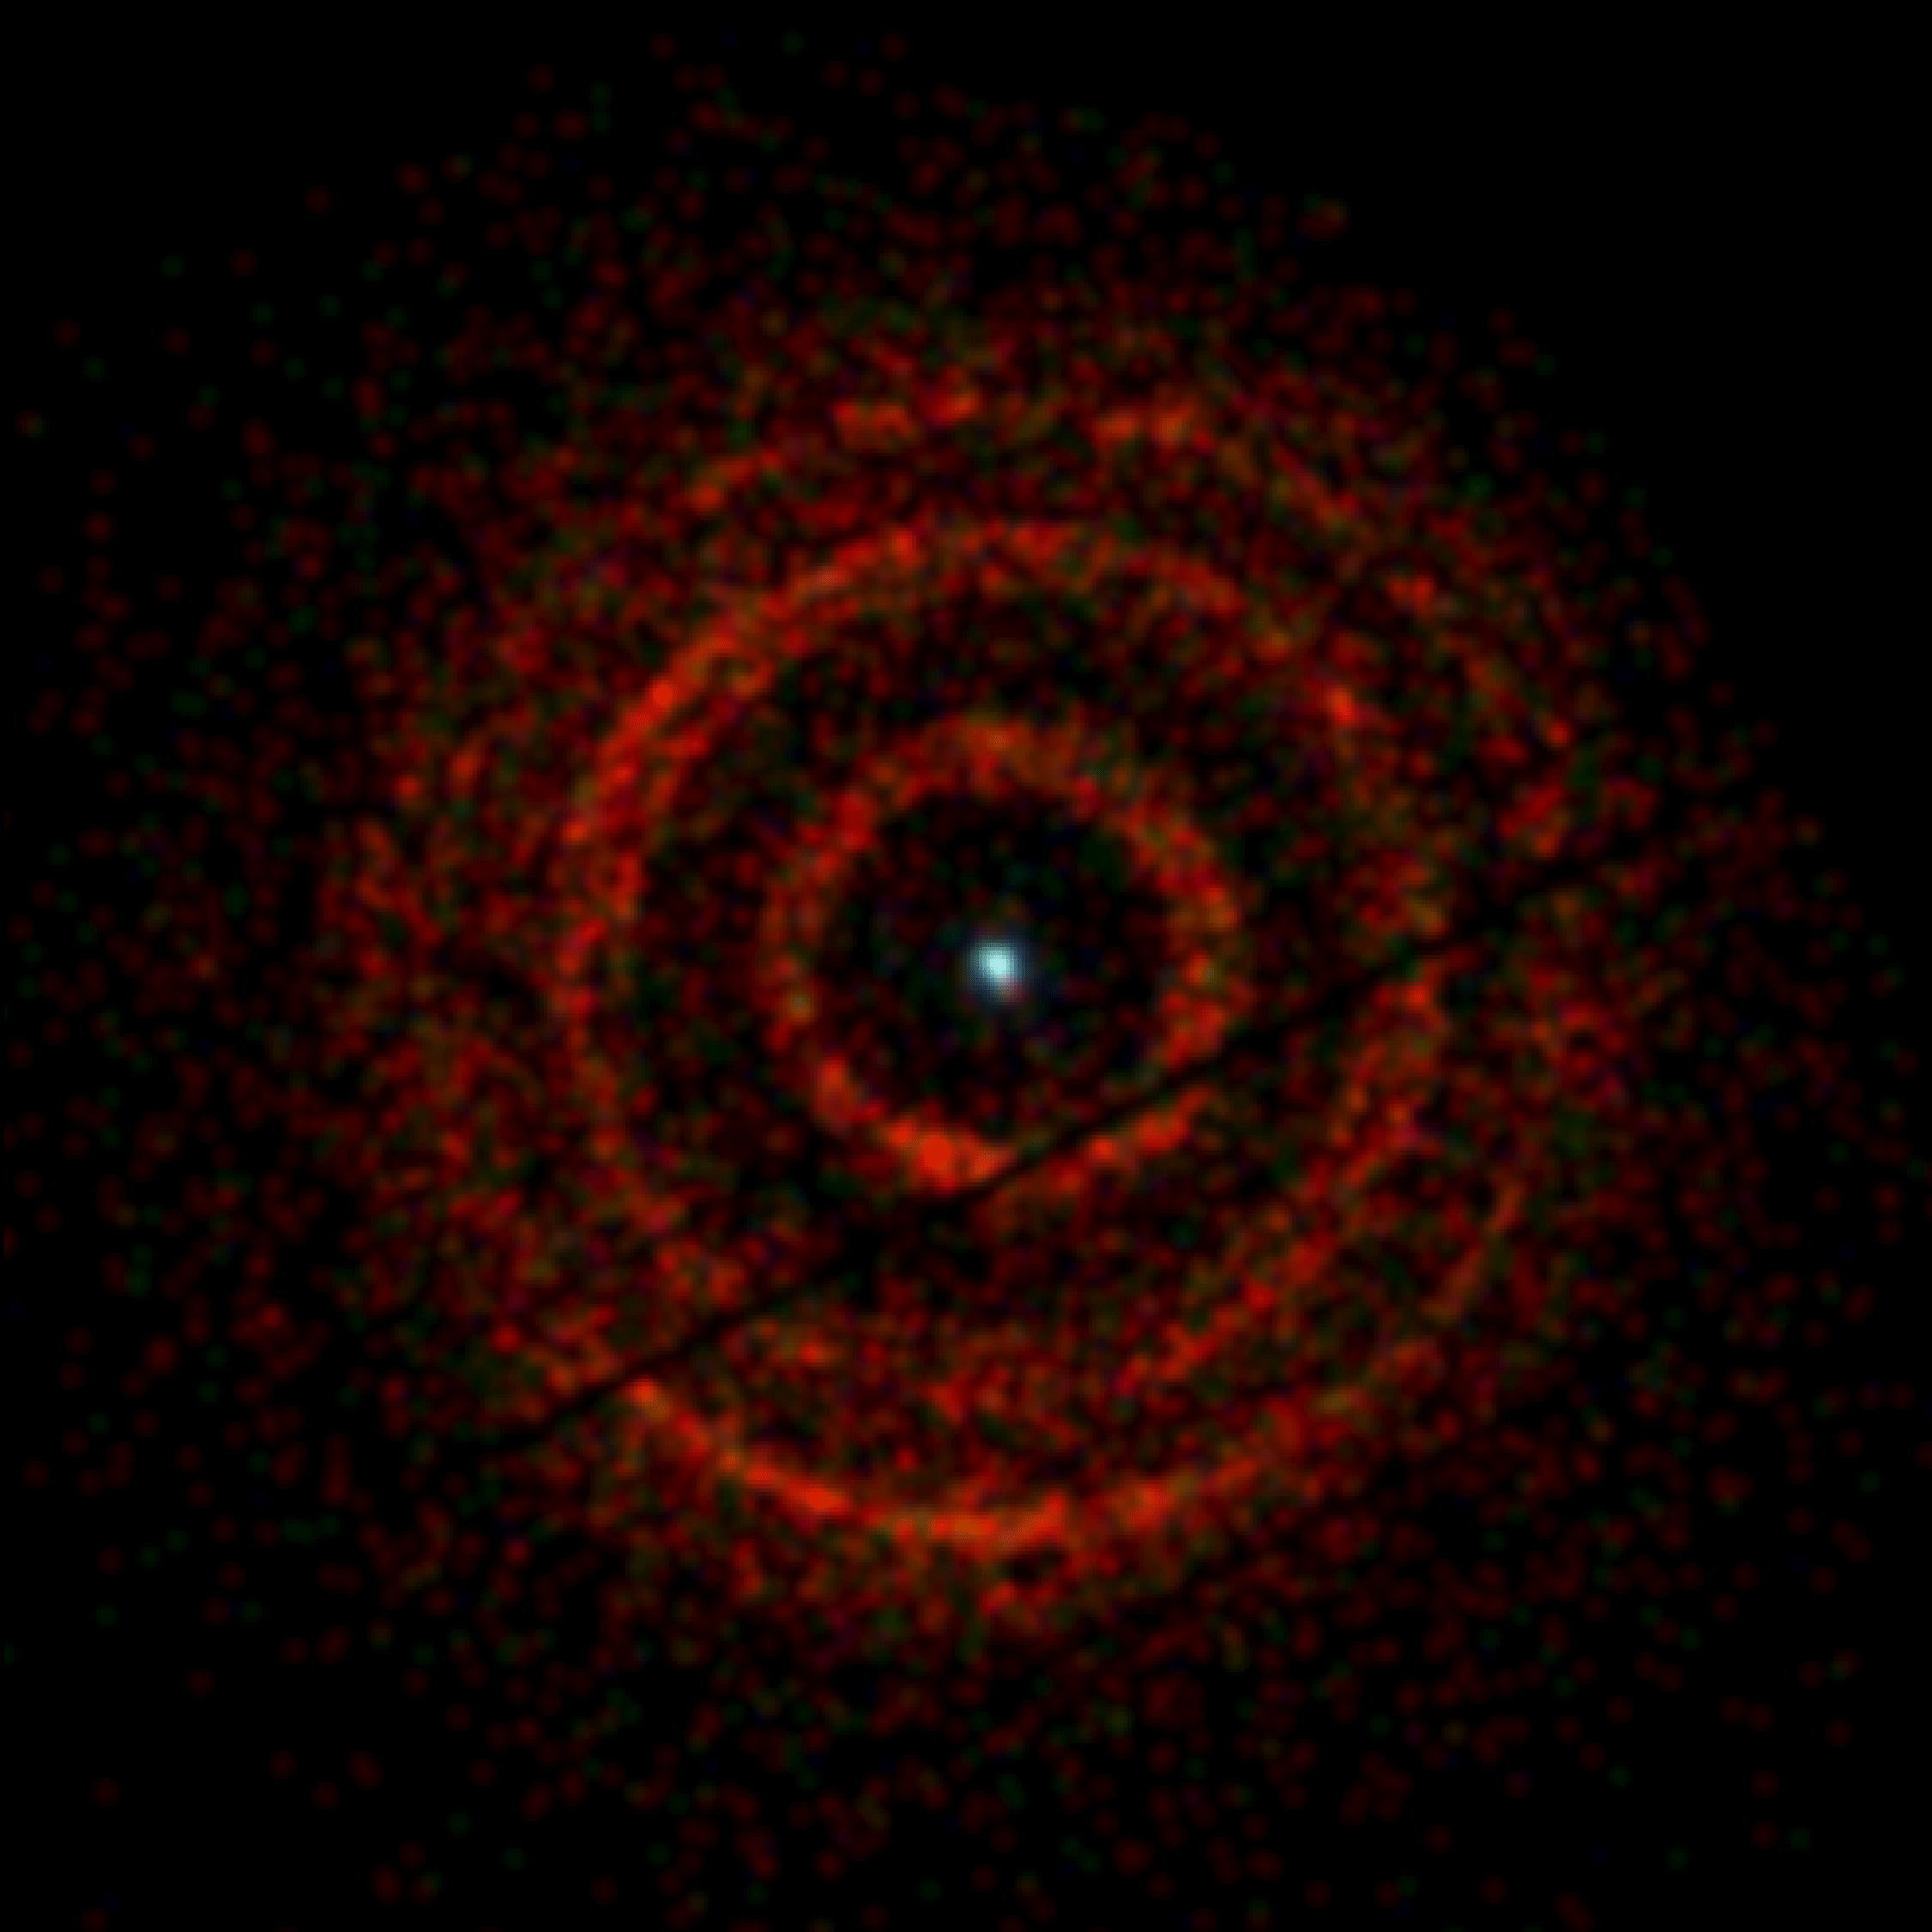 Анимационное изображение колец рентгеновского исзучения, испускаемых черной дырой V404 Лебедя